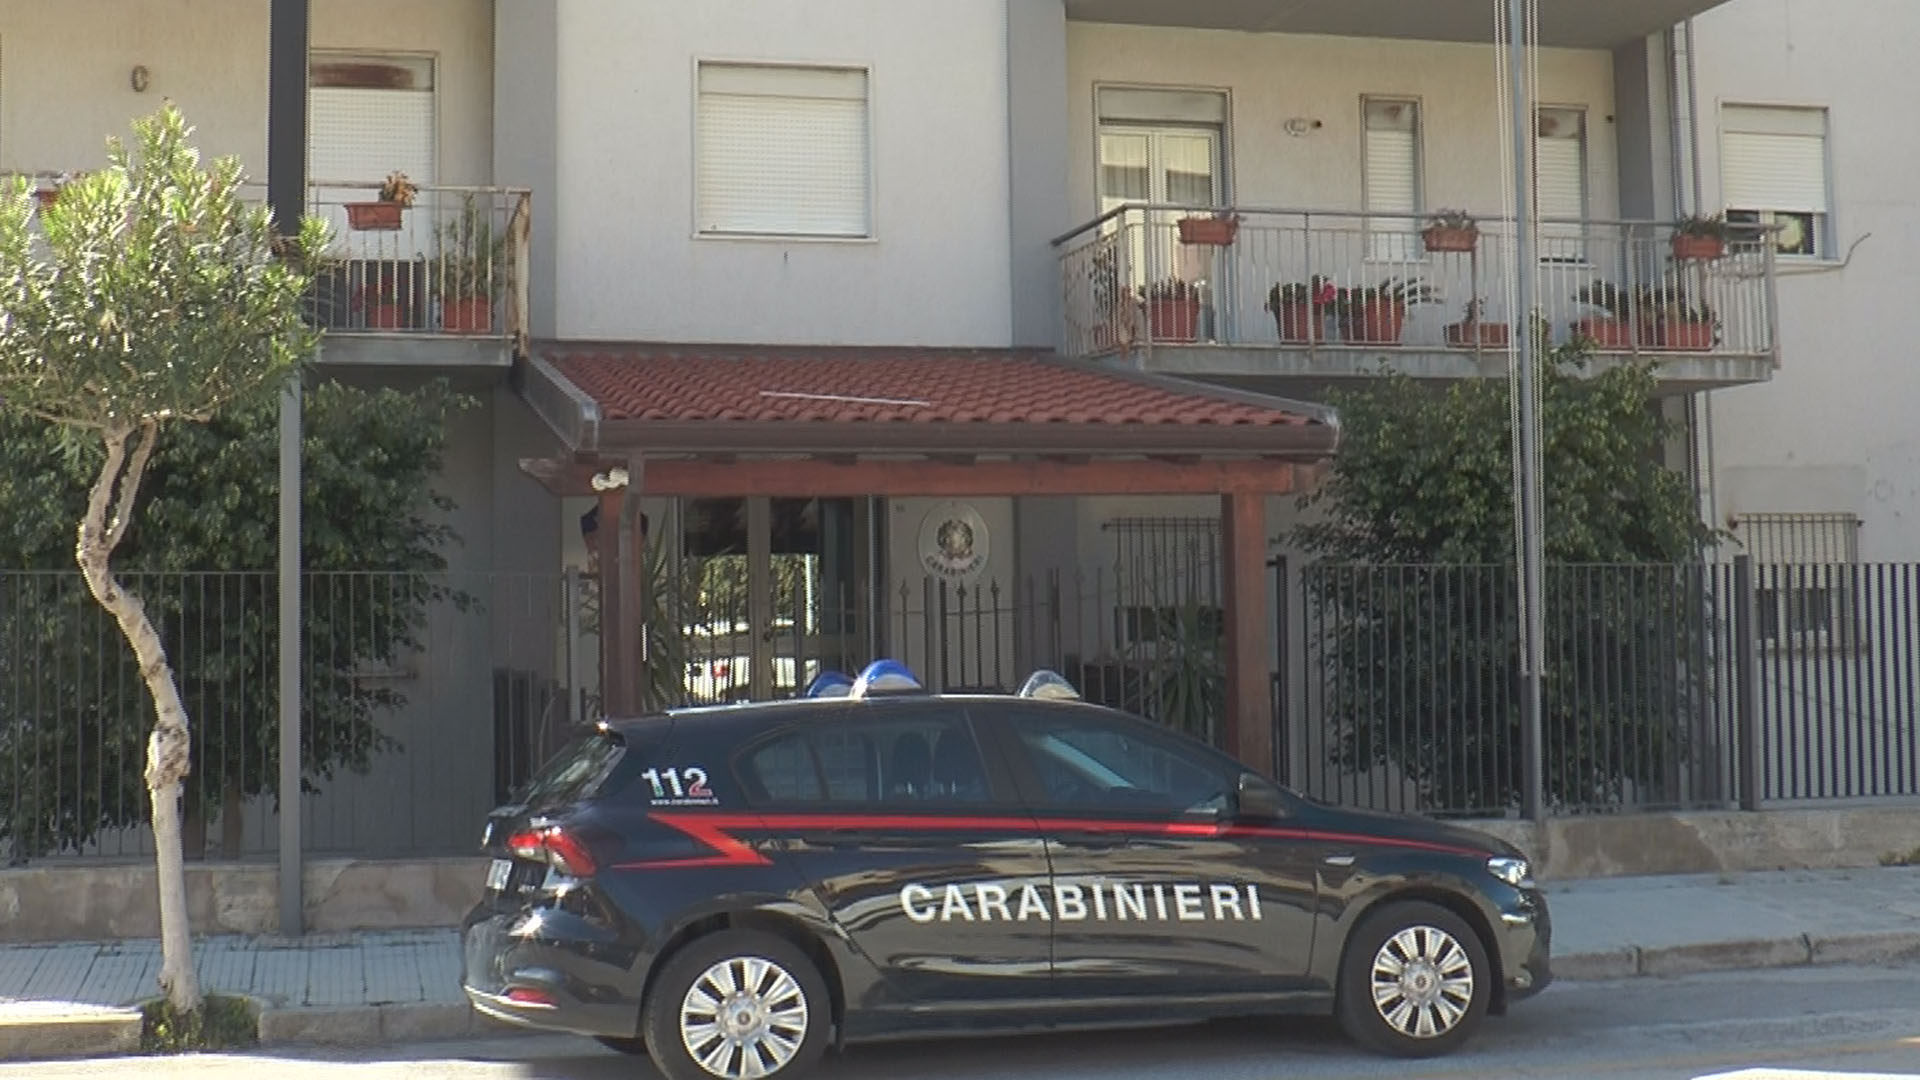 Pedina la donna che perseguitava da tempo, la vittima chiama i carabinieri: 47enne finisce agli arresti domiciliari